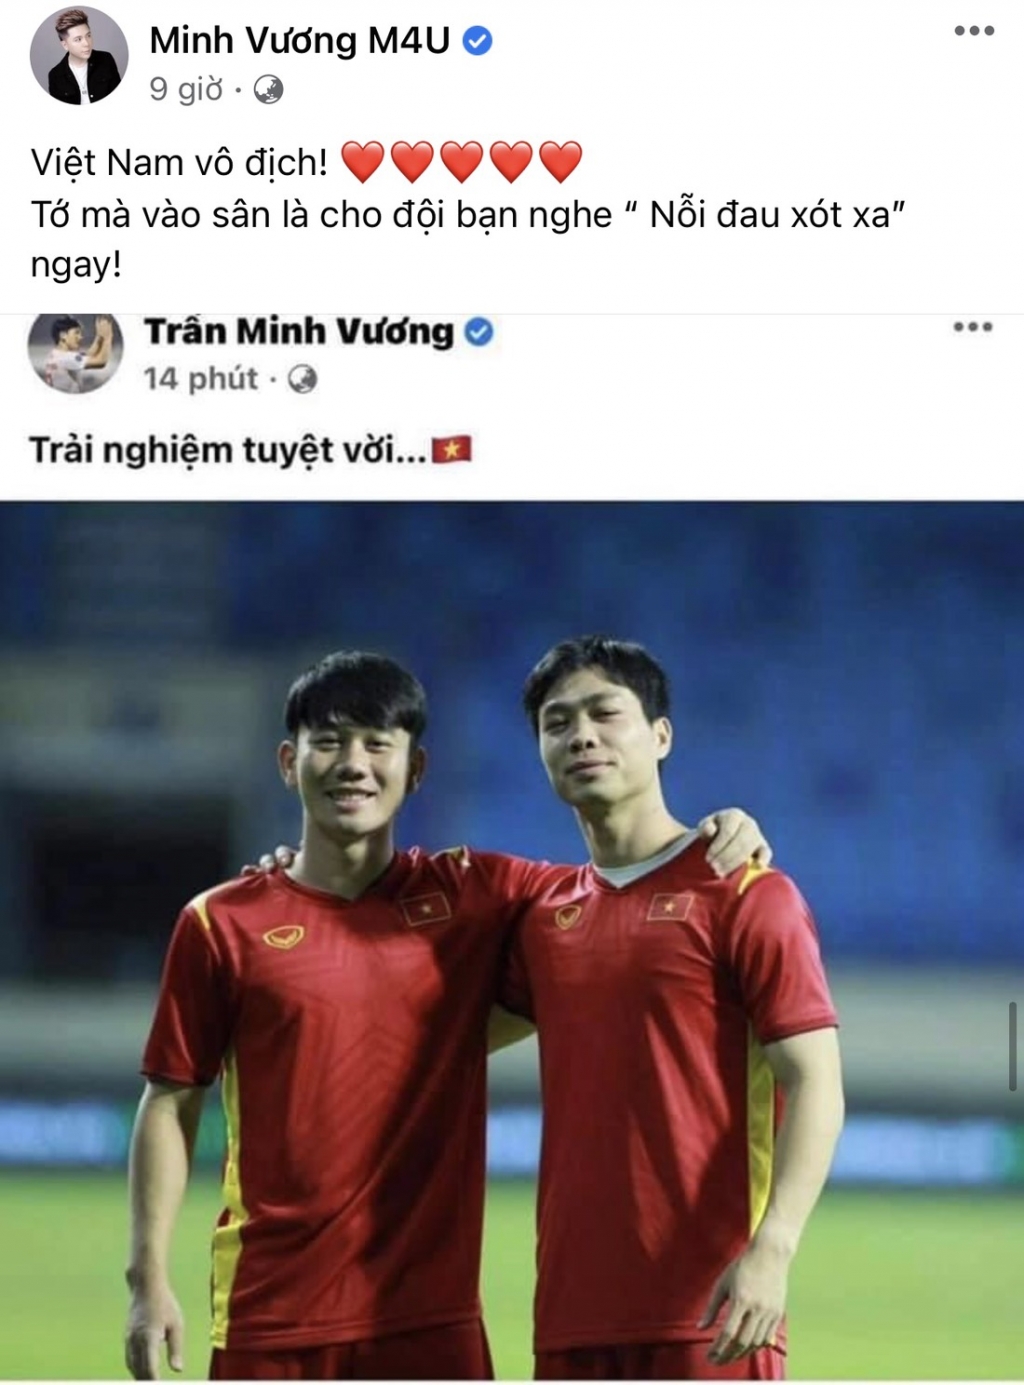 Trần Minh Vương là trai đẹp tuyển Việt Nam tiếp theo được cả showbiz săn đón